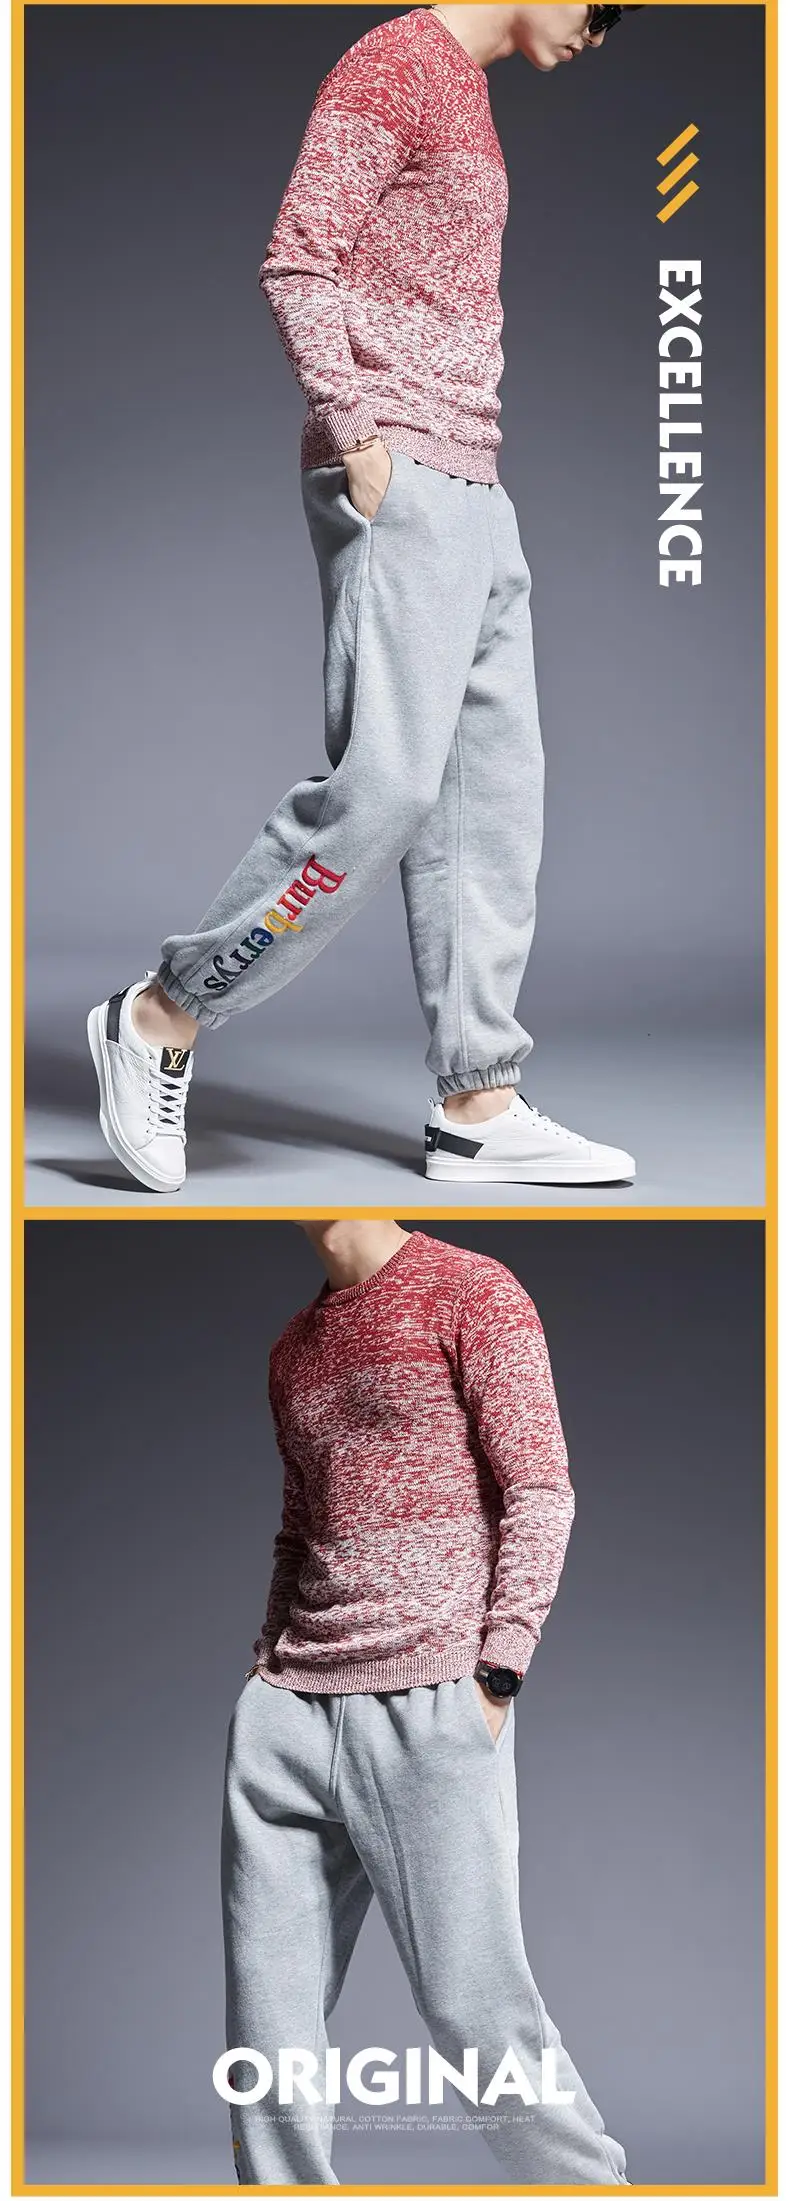 Новинка, модный брендовый мужской свитер, Пуловеры с круглым вырезом, Облегающие джемперы, вязанные, высшего качества, зимняя, корейский стиль, повседневная мужская одежда